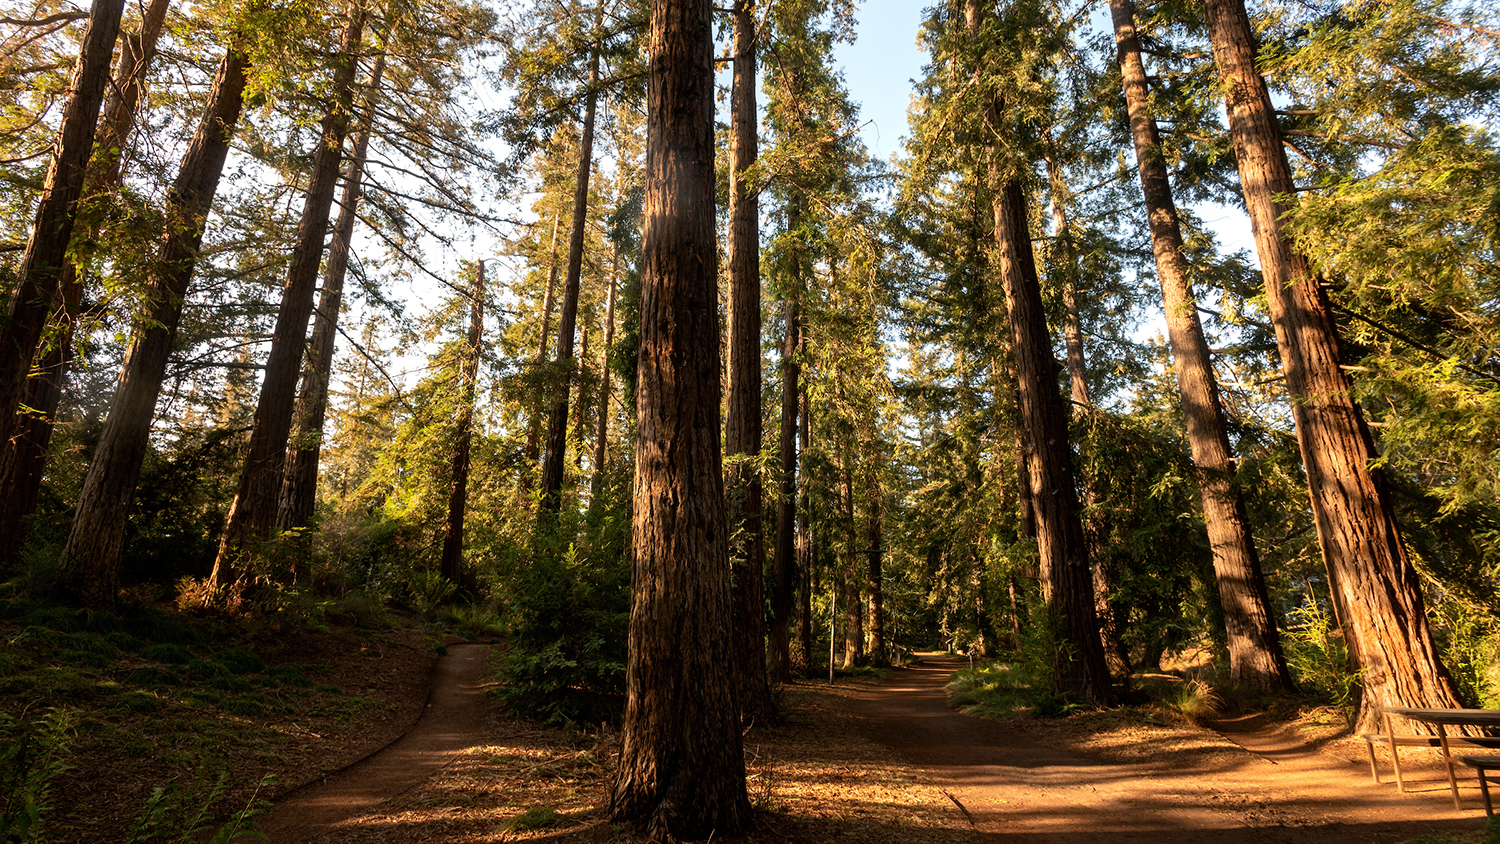 Redwood Grove in the Arboretum